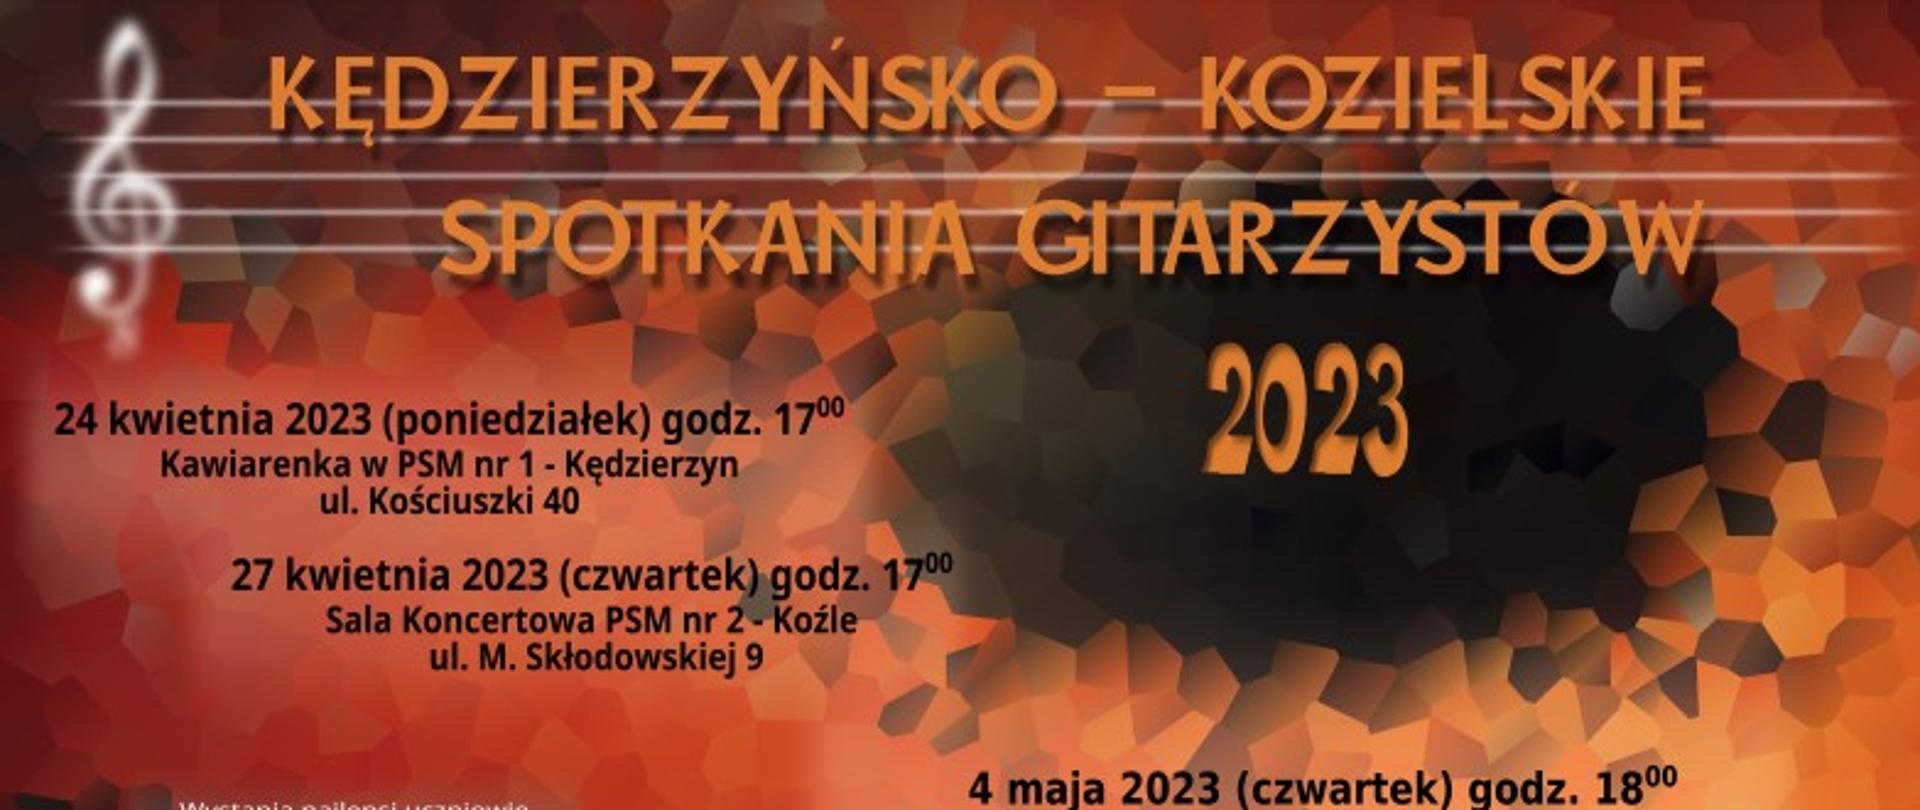 Plakat graficzny Kędzierzyńsko-Kozielskich Spotkań Gitarzystów 2023, na brązowo-szarym geometrycznym tle szczegółowe informacje o czterech koncertach odbywających się w mieście, 24 kwietnia, 27, kwietnia, 4 maja i koncert galowy 11 maja